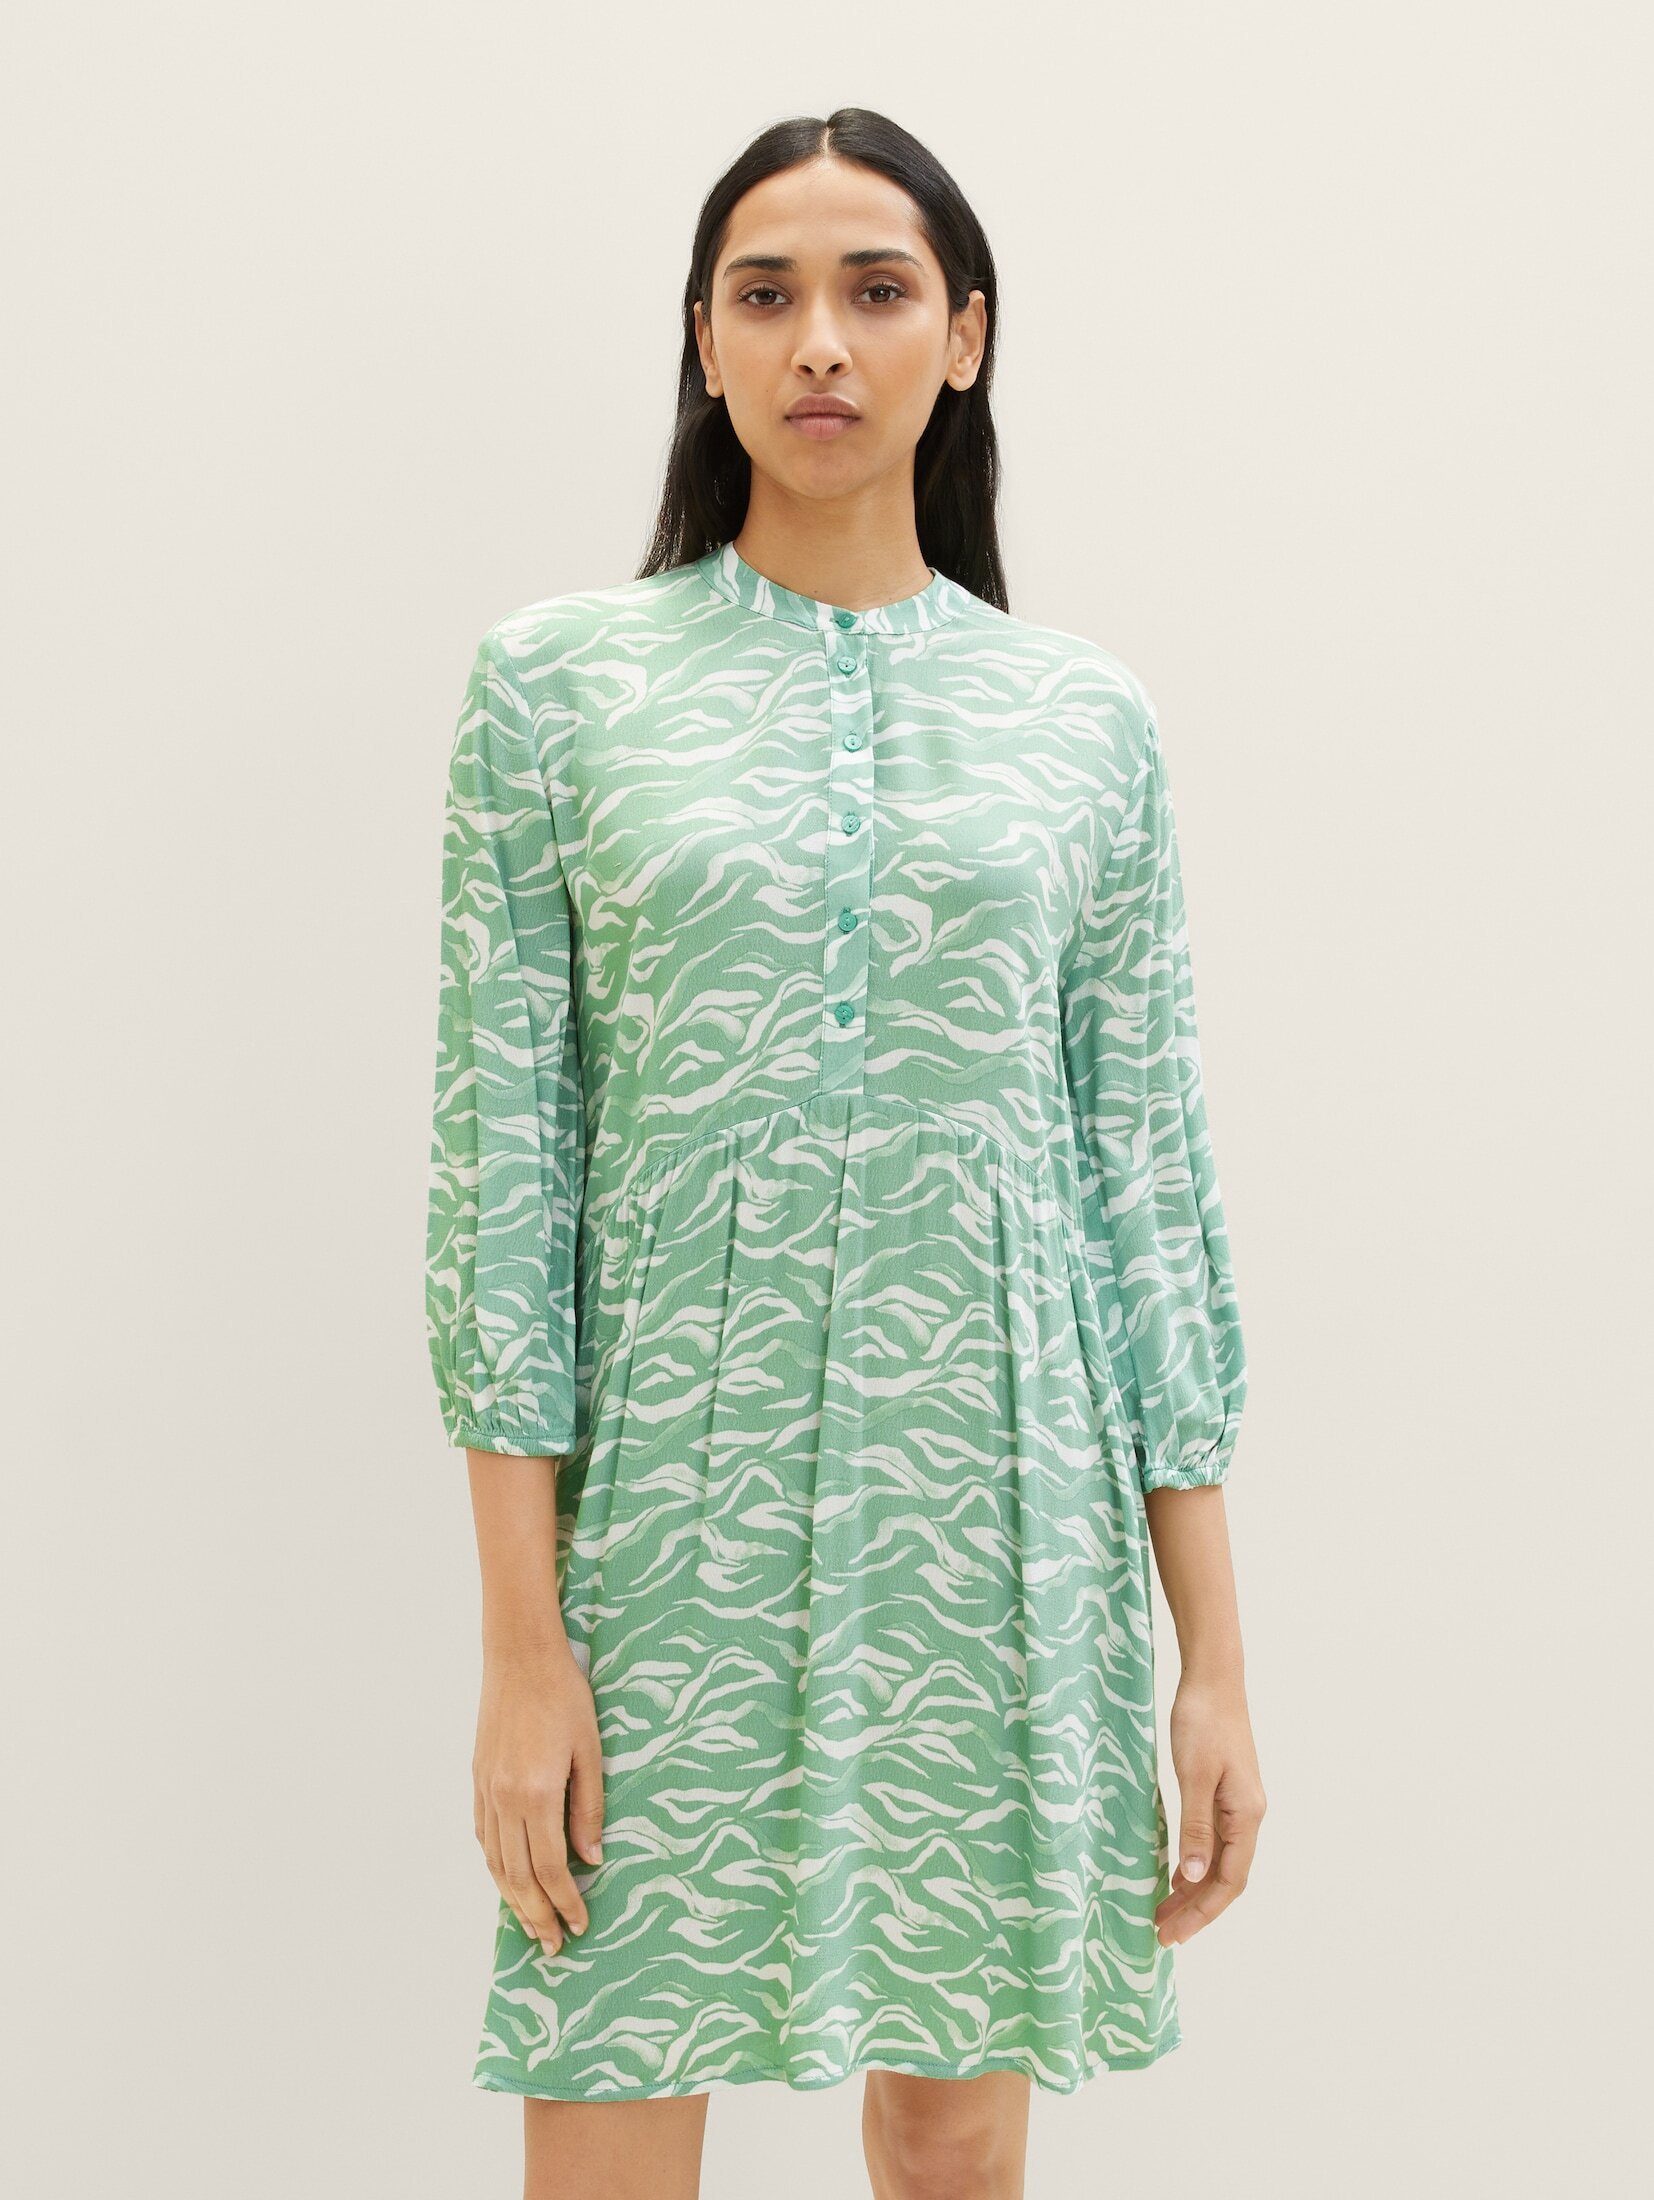 TOM TAILOR Jerseykleid Kleid mit Allover-Print green small wavy design | Jerseykleider